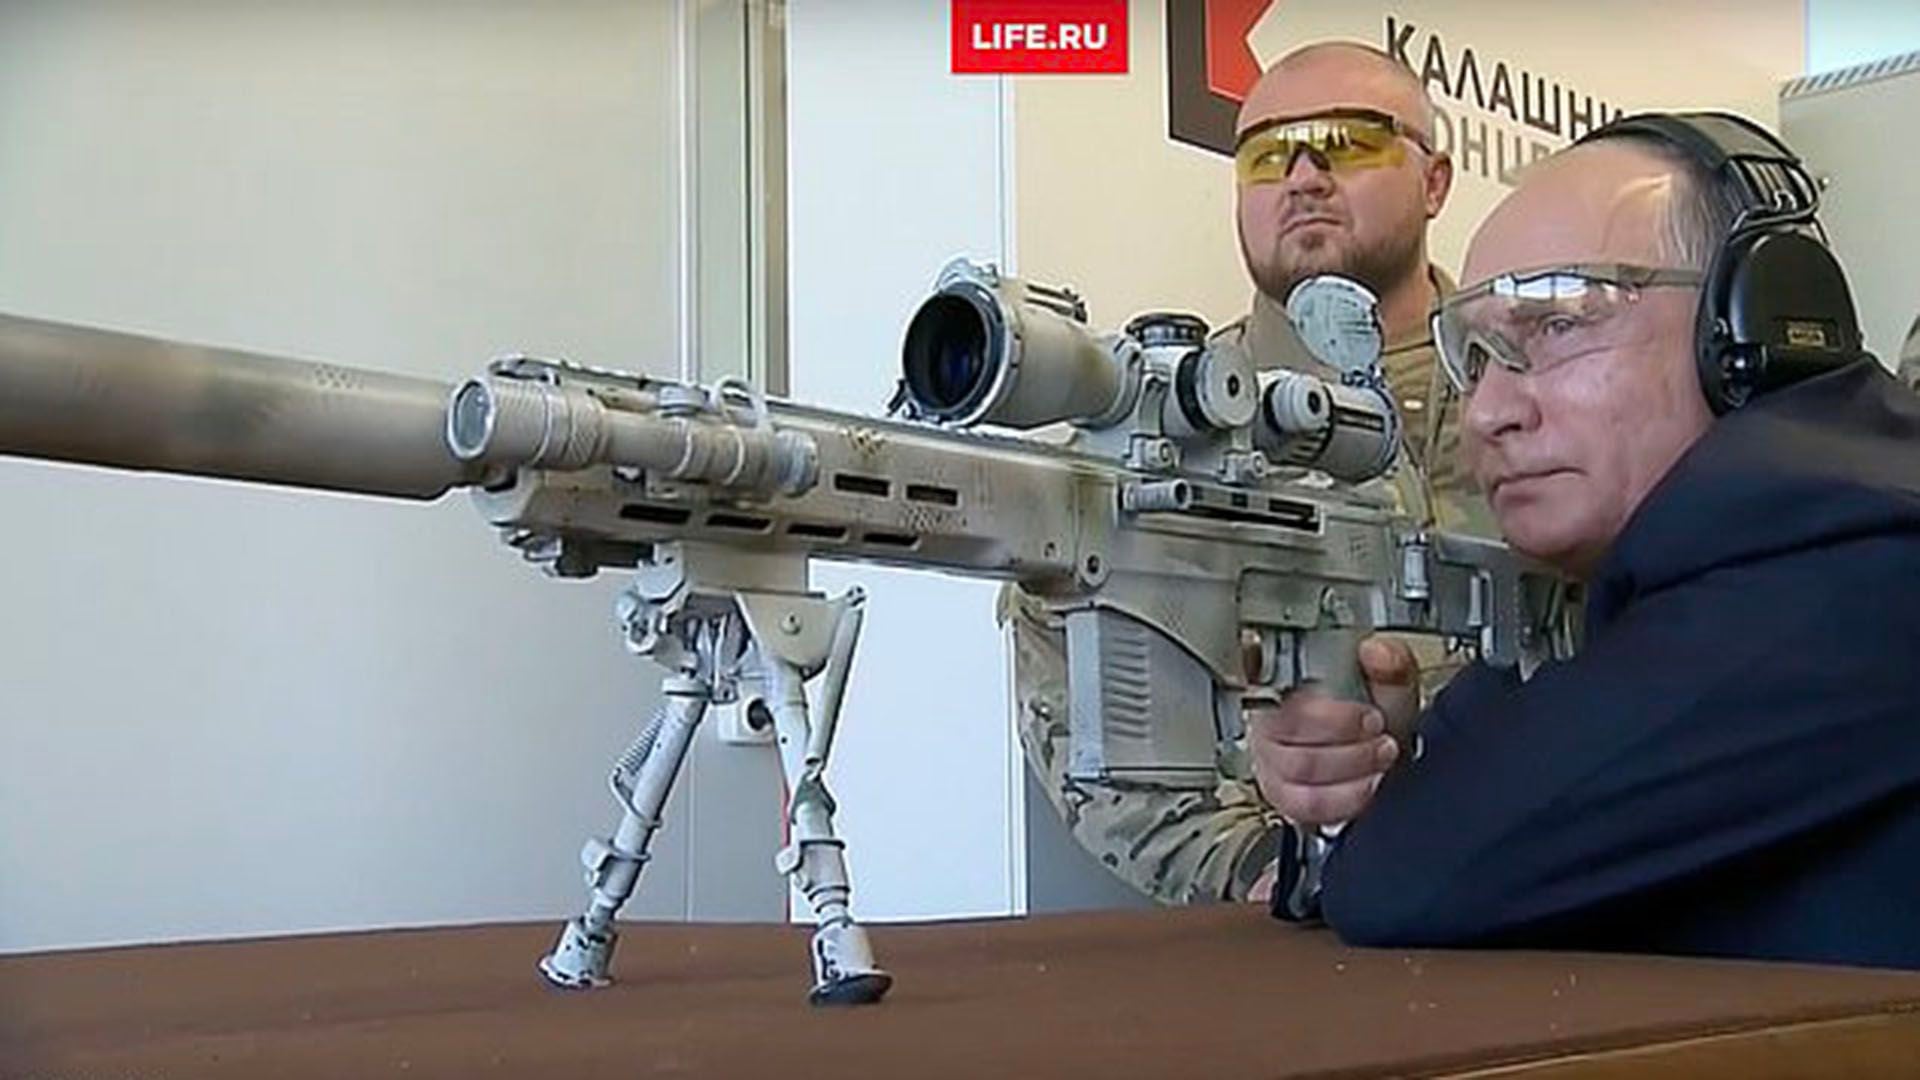 Putin disparando con un moderno fusil Kalashnikov